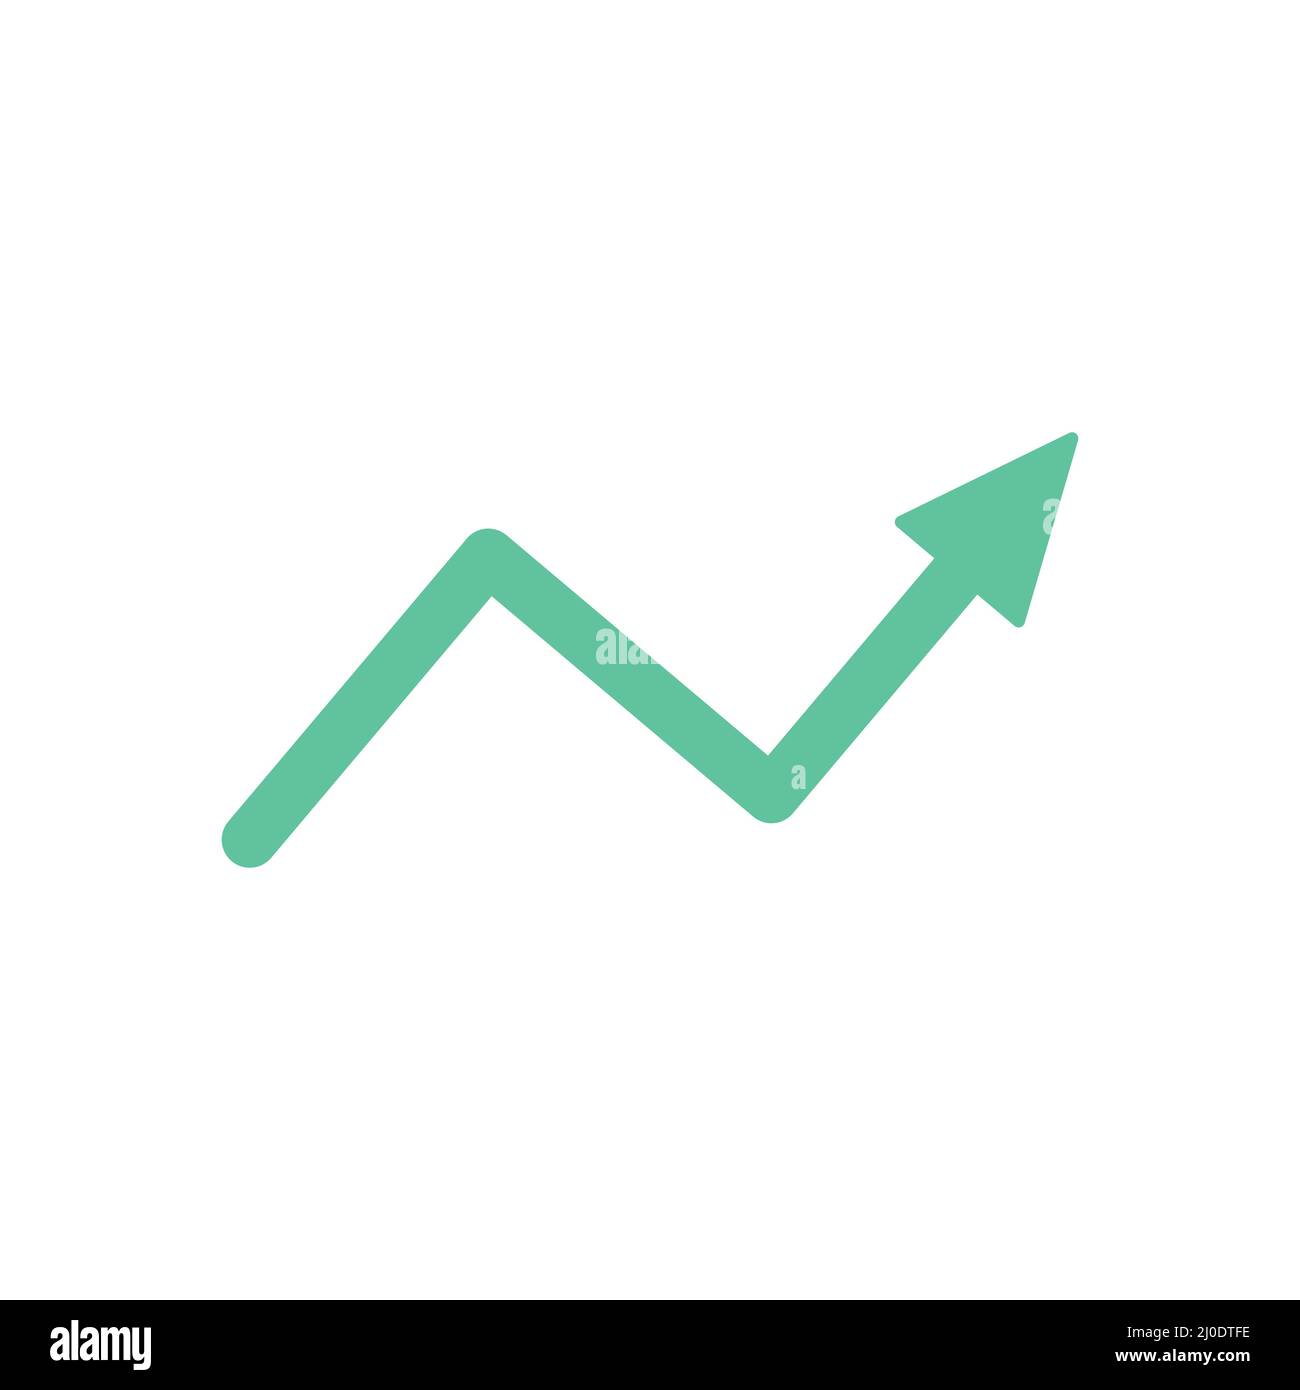 Increase arrow sign. Green rising arrow icon. Business success concept. Stock Vector